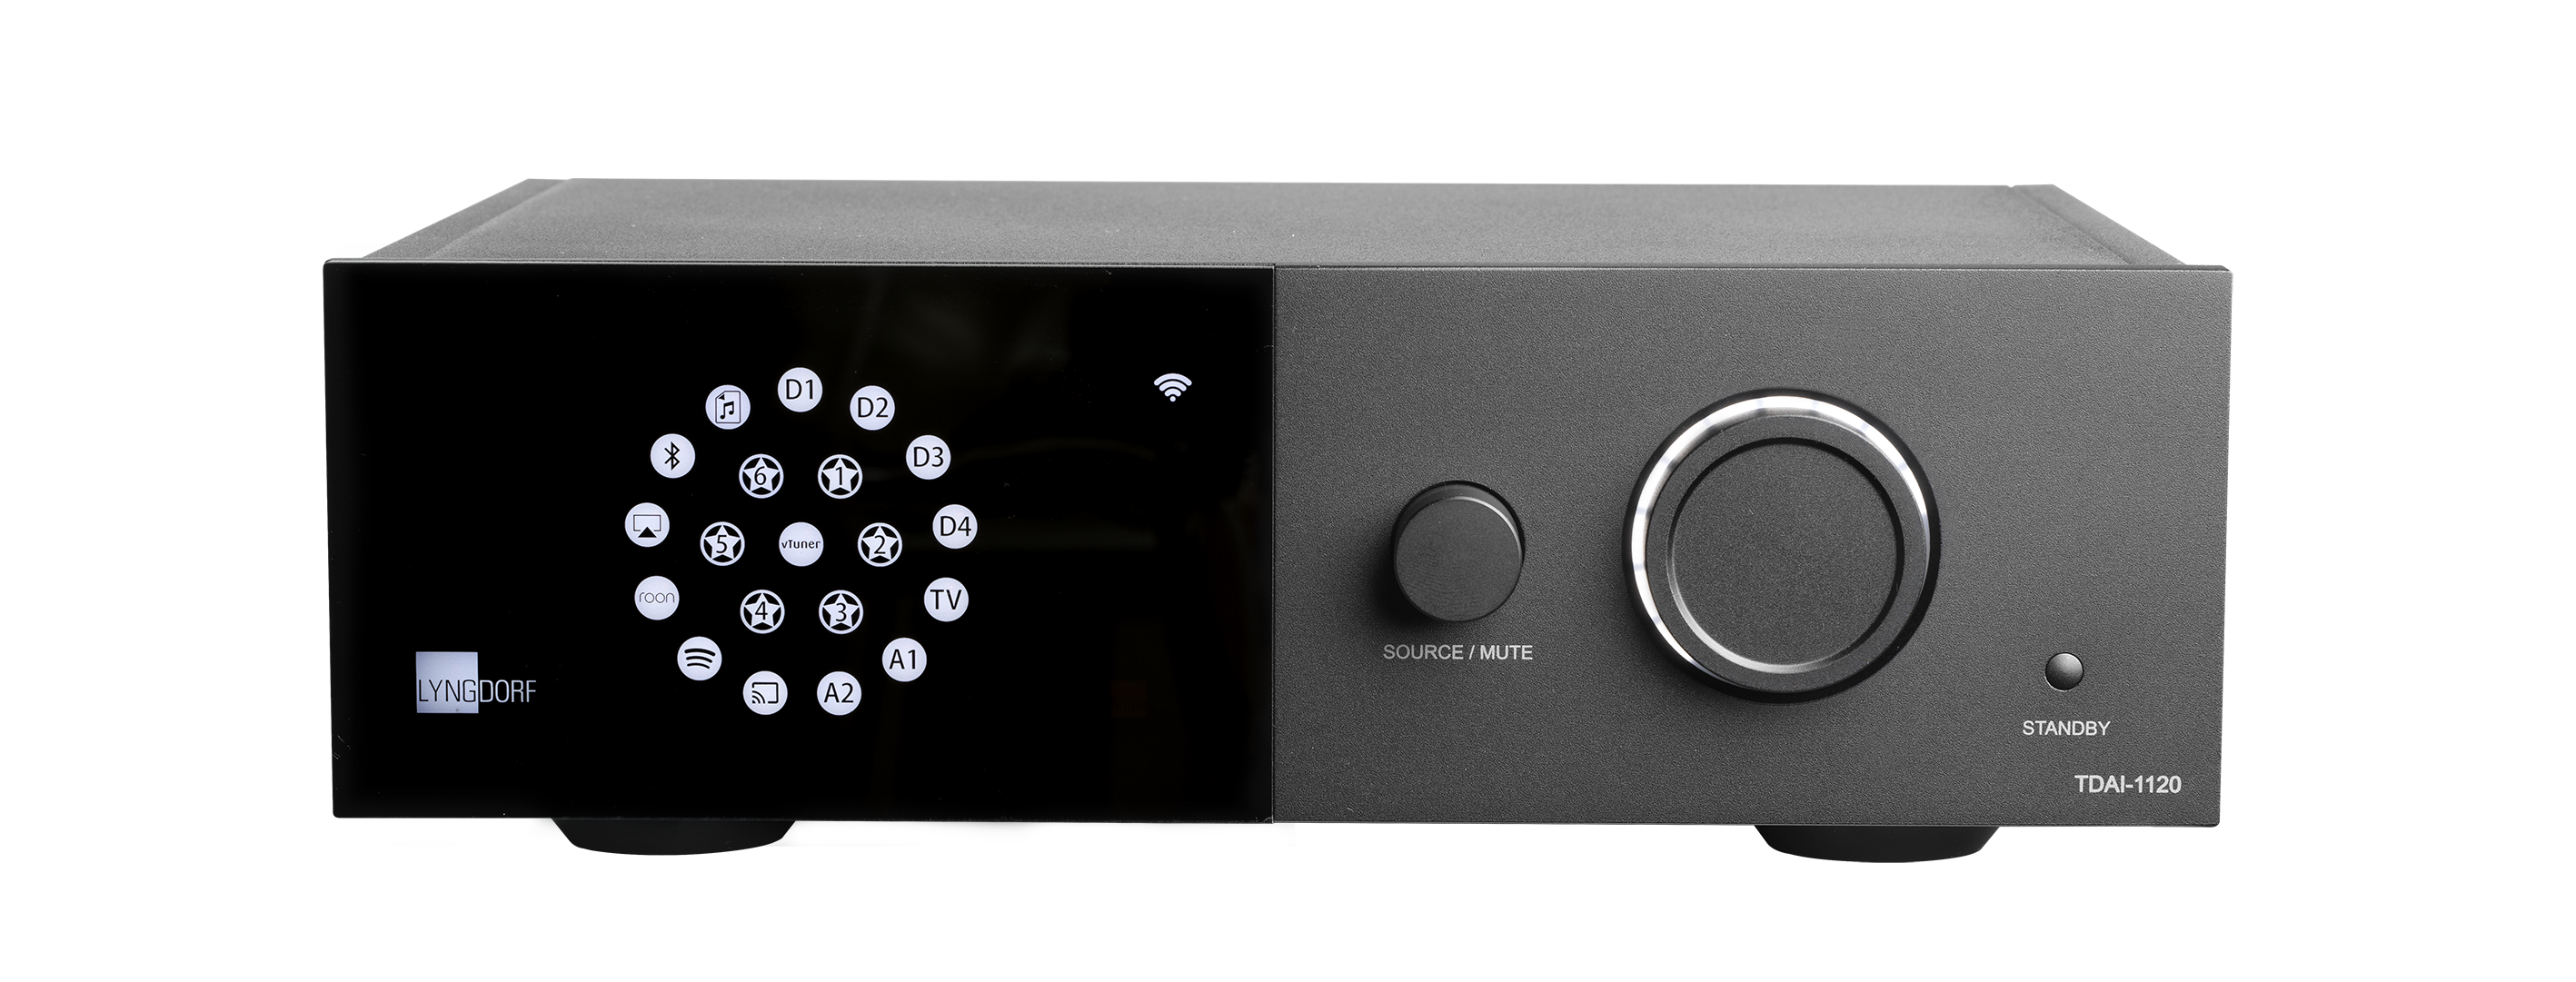 Lyngdorf TDAI-1120 Streaming Digital Amplifier